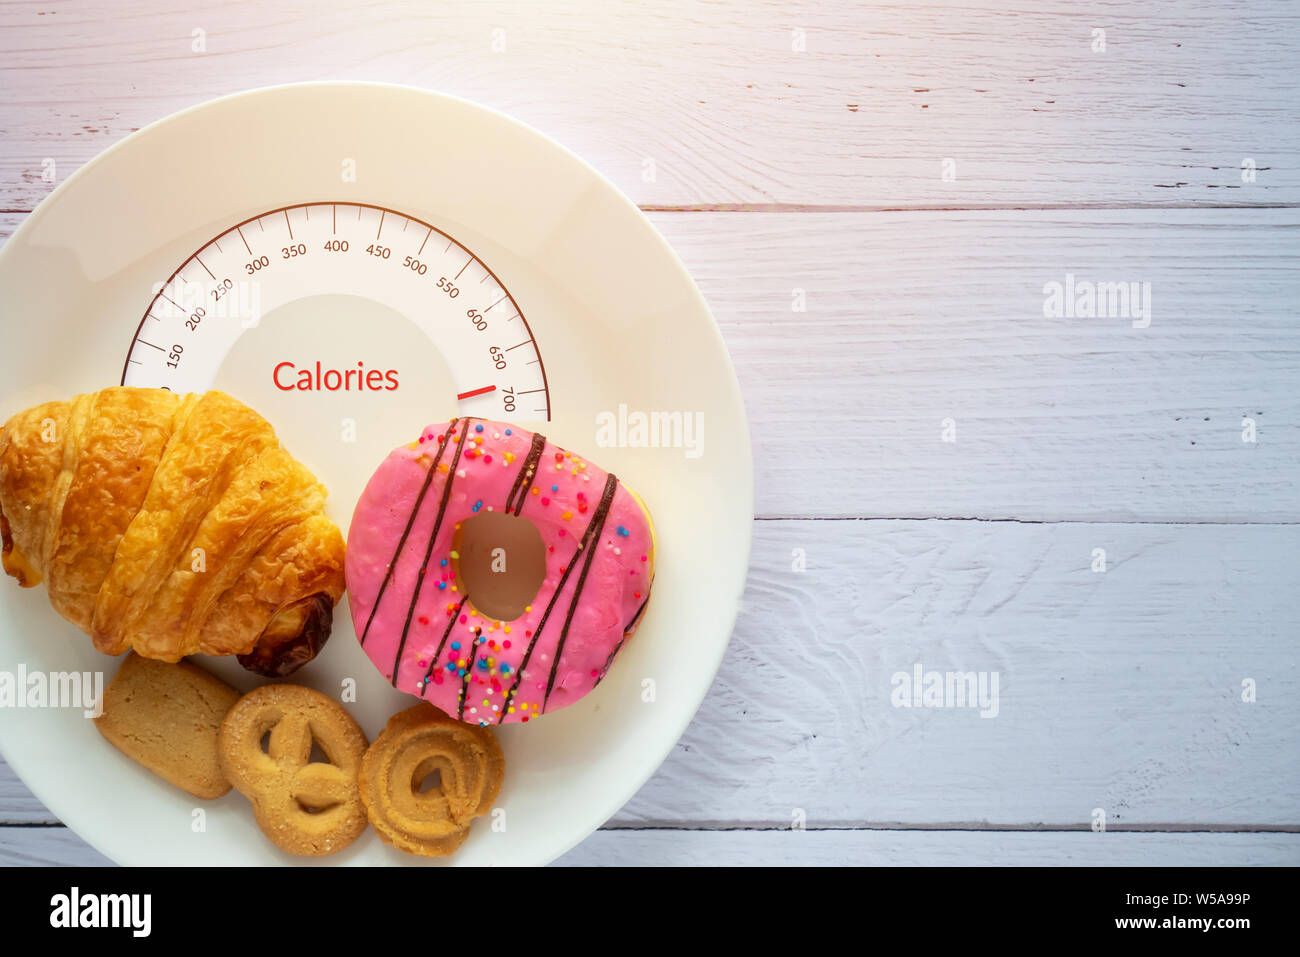 Kalorien zählen und die Lebensmittelüberwachung Konzept. Donut, Croissant und Cookies auf weiße Platte mit Zunge Skalen für Kalorien messen Stockfoto